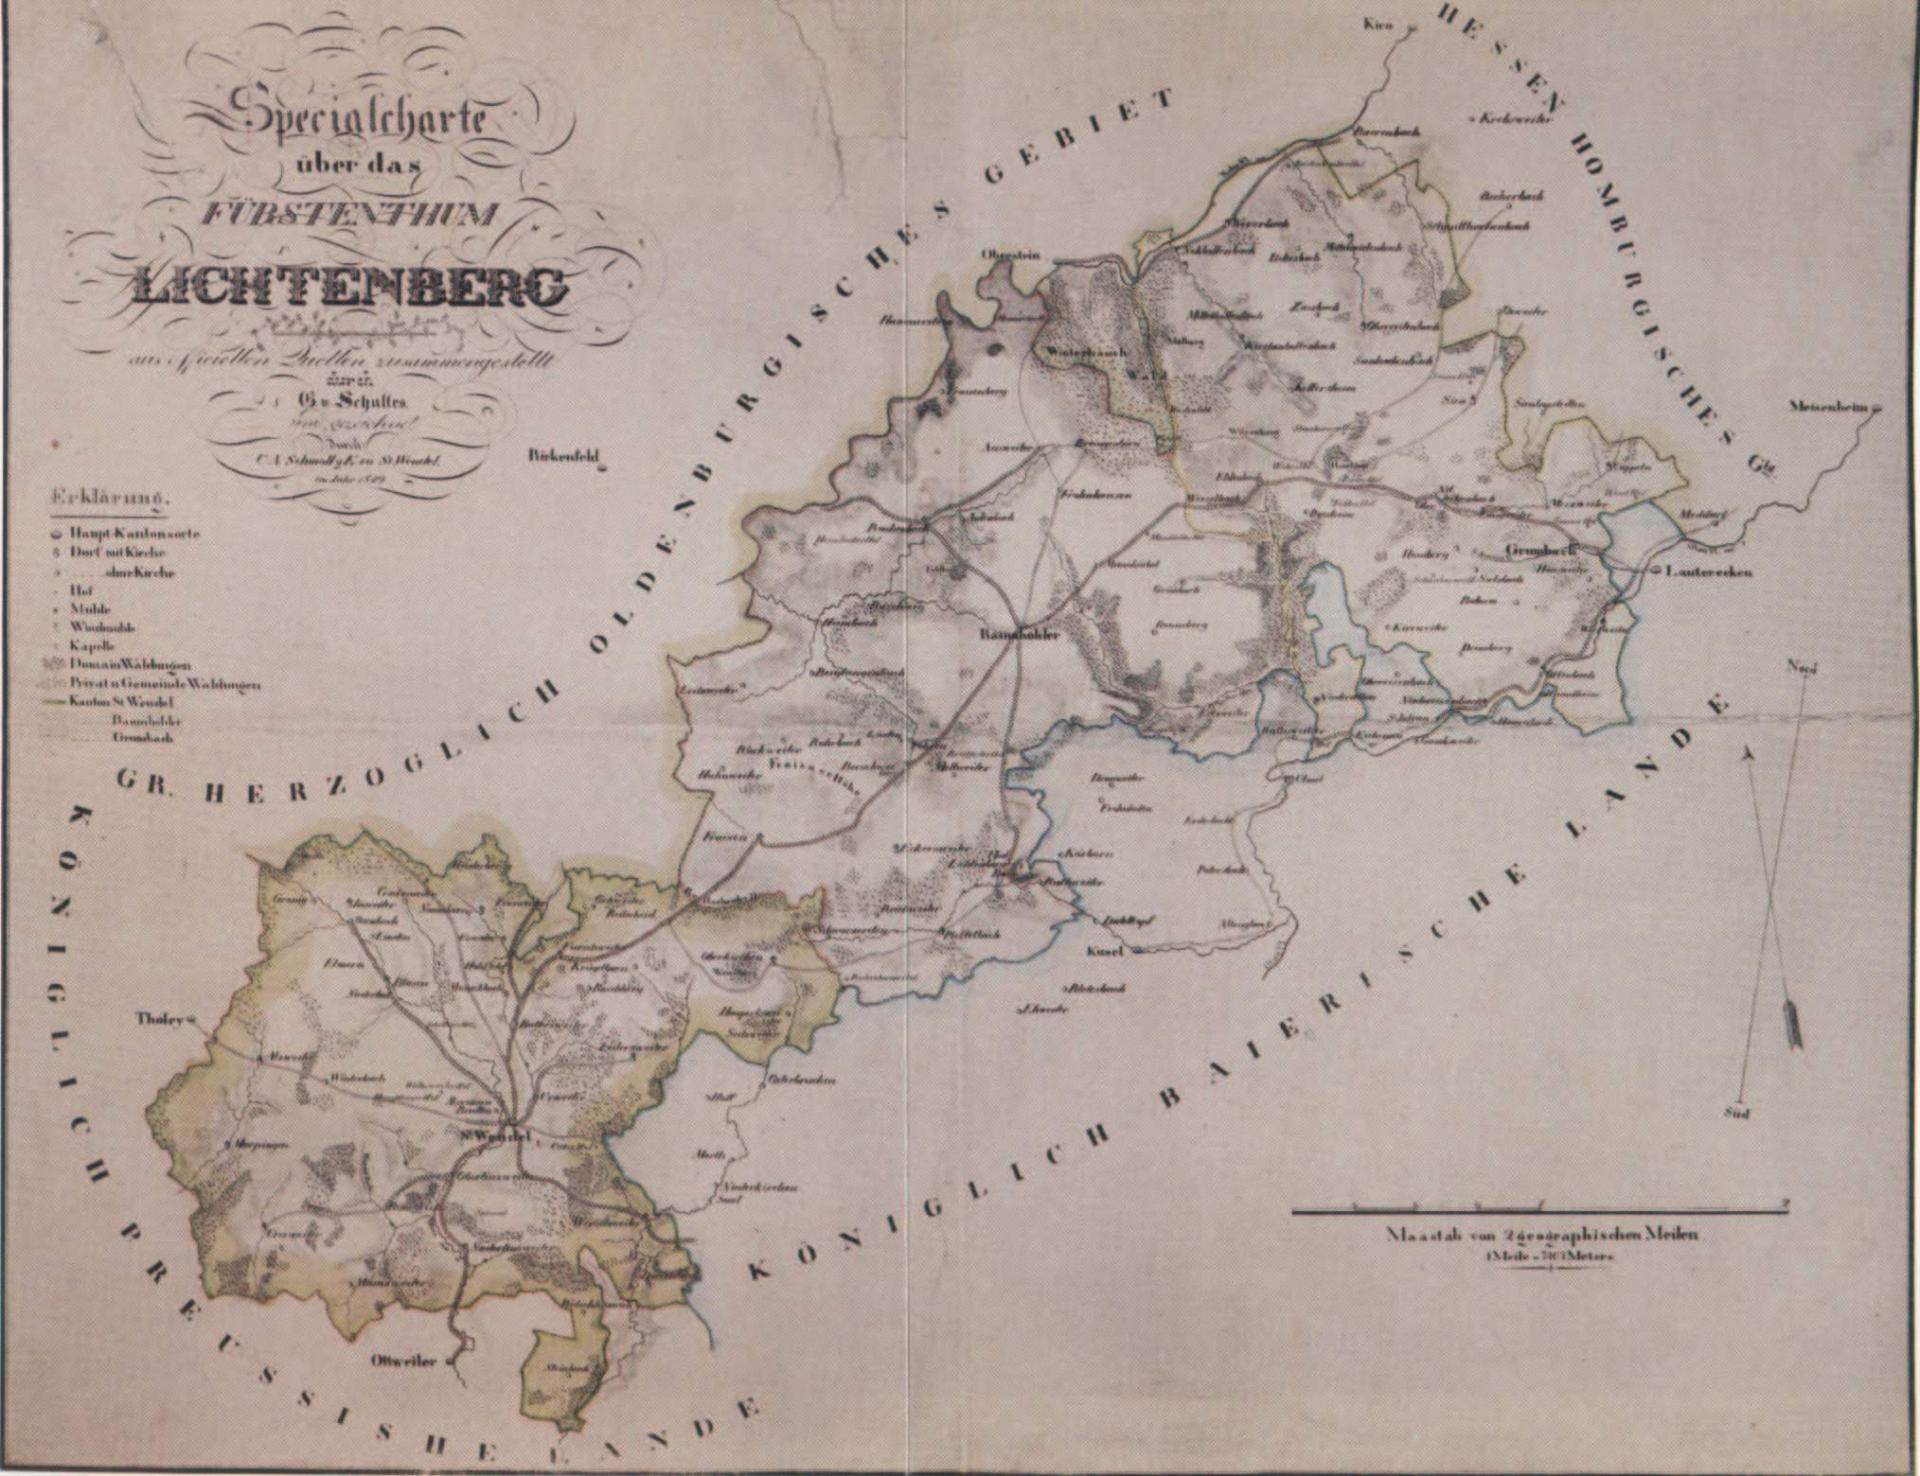 Karte 1819 Ftm Lichtenberg / Fotos wurden bereit gestellt von: Werner Zimmer (†), Siegfried Gollnick,  Markus Christian